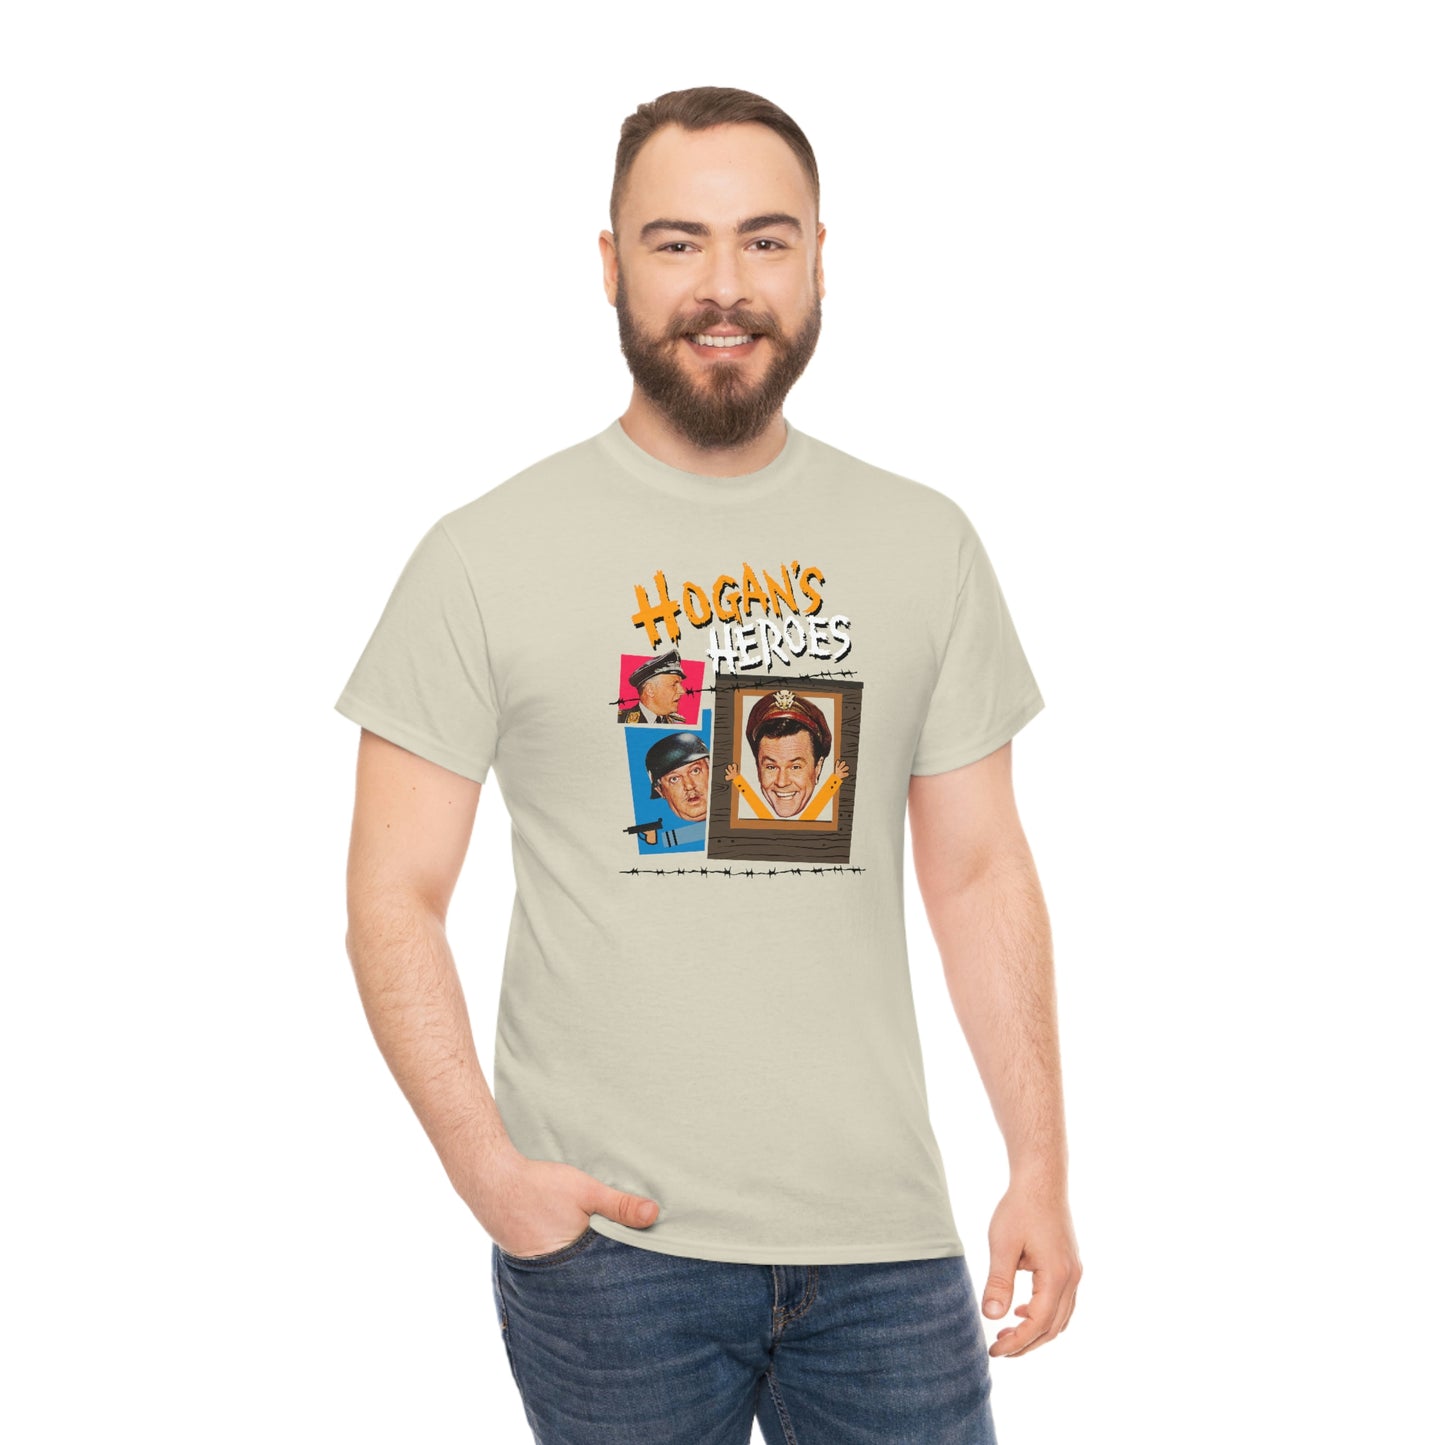 Hogan's Heros T-Shirt